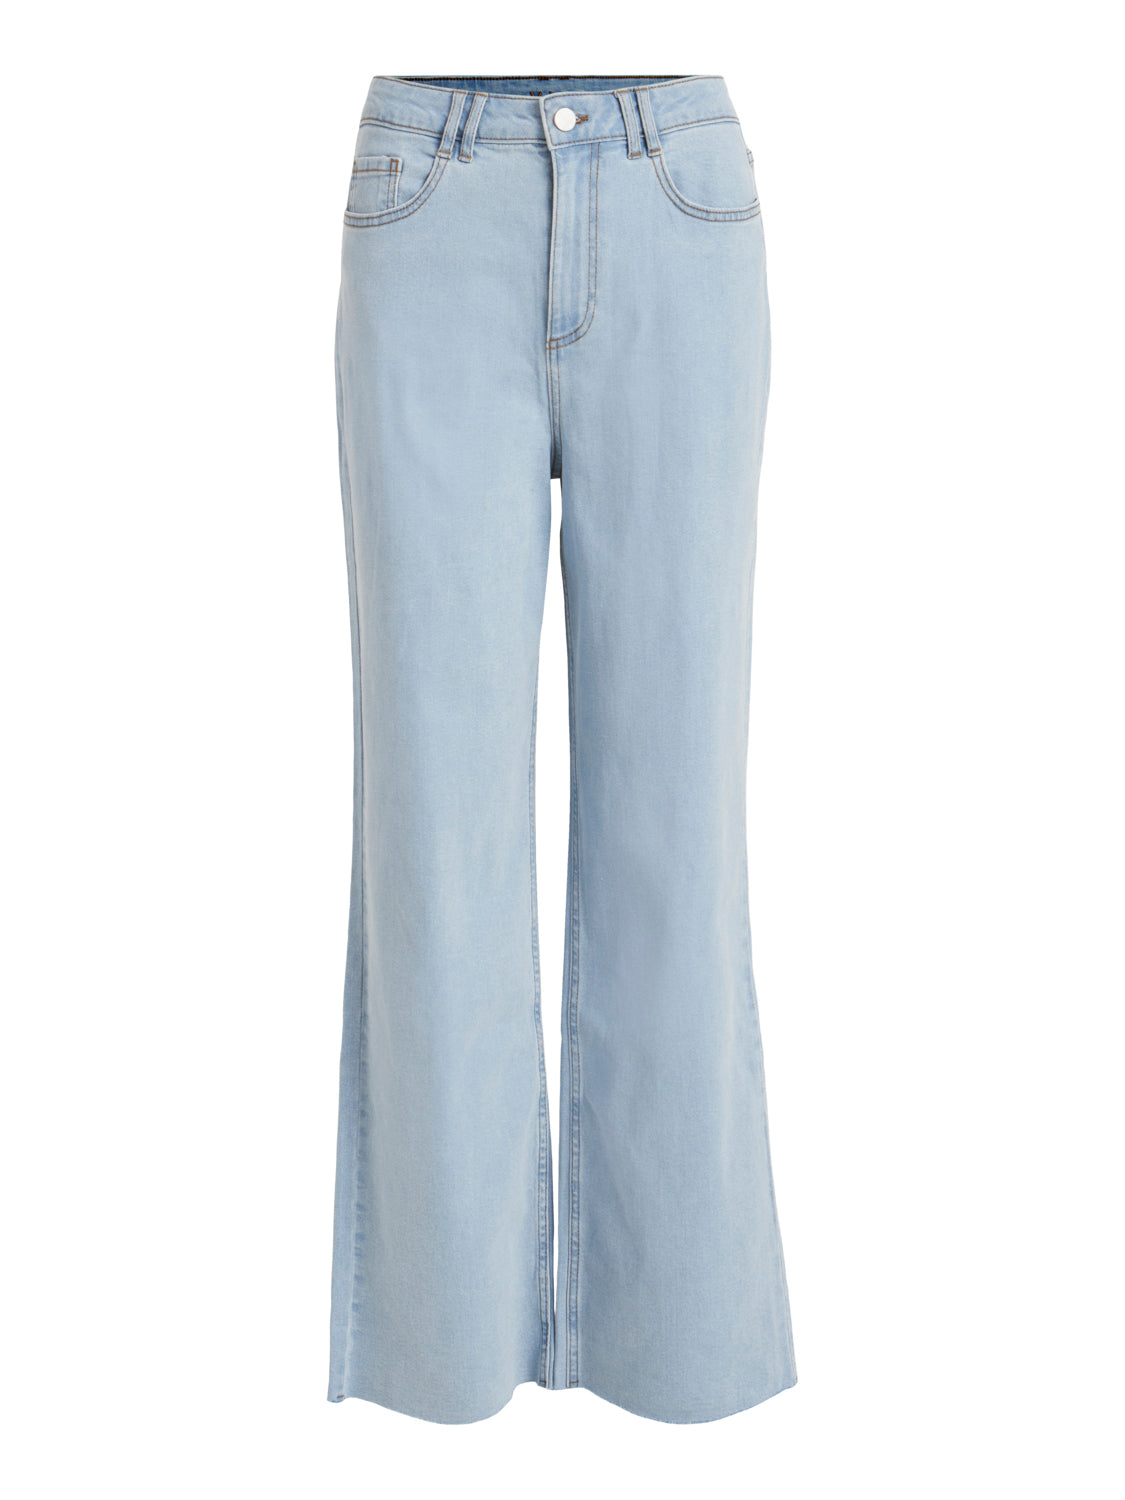 VIWIDER Jeans - Light Blue Denim